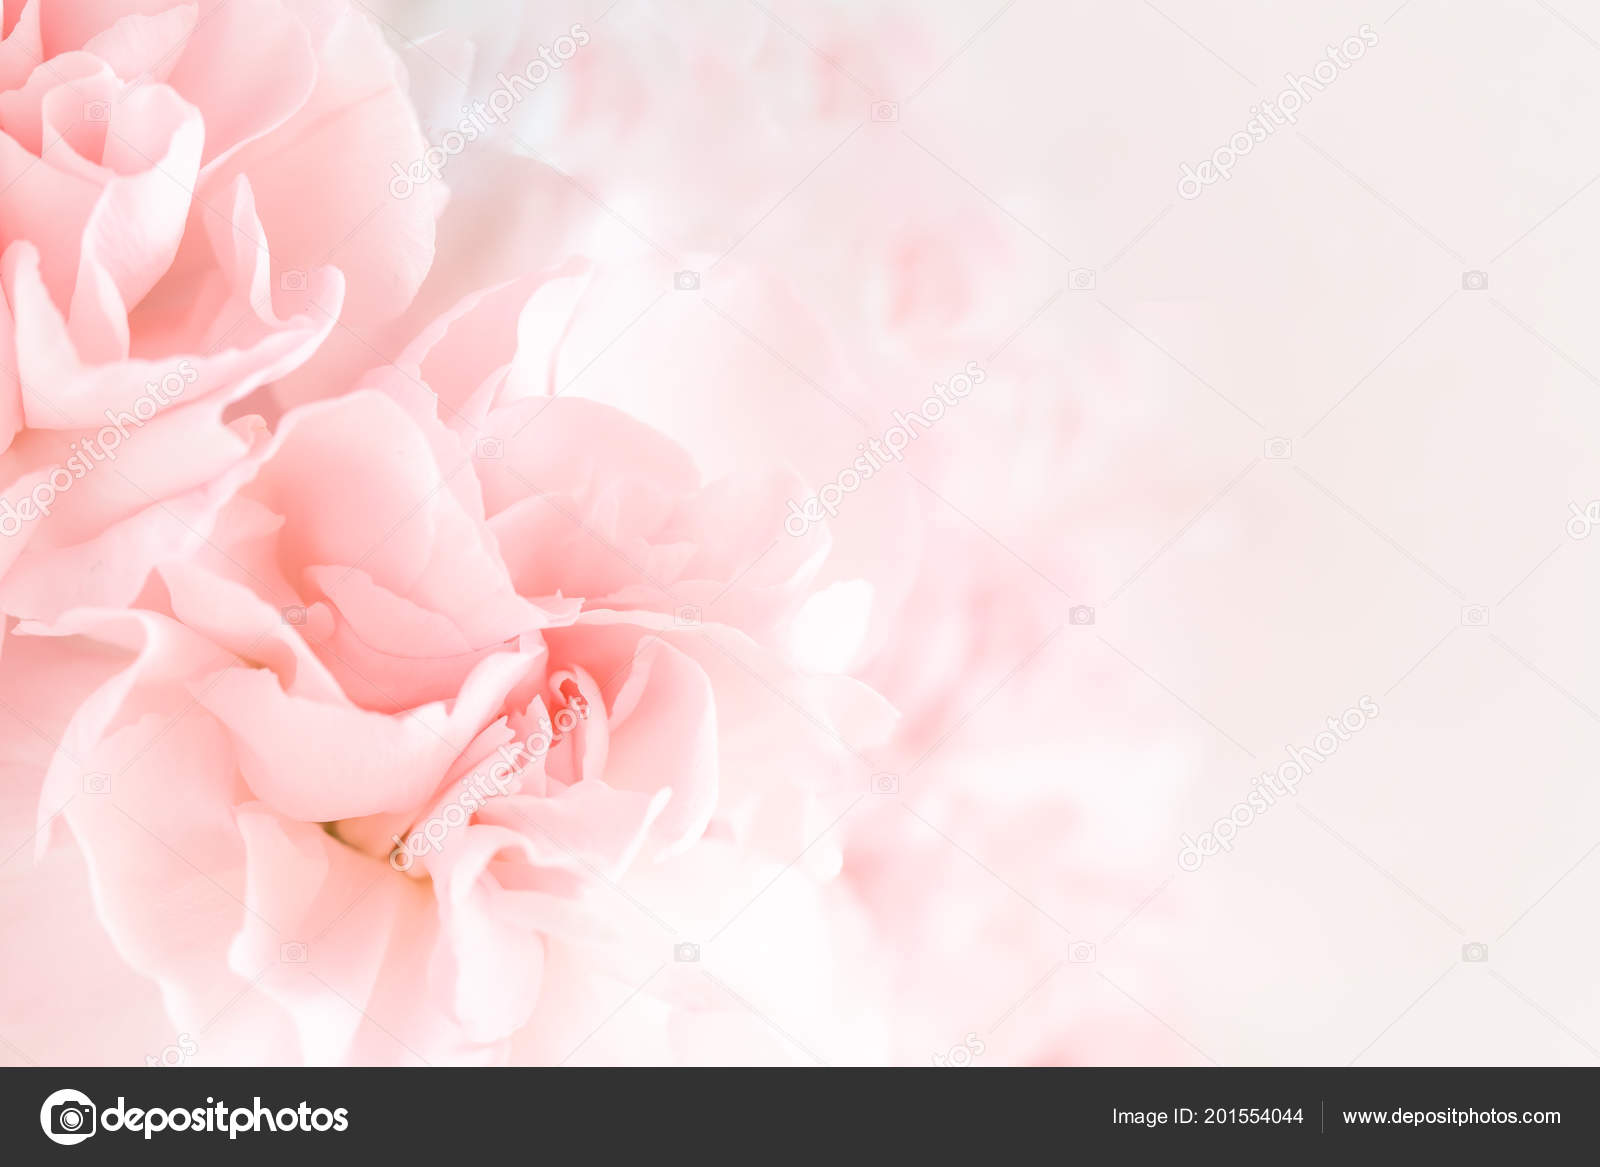 Hãy chiêm ngưỡng bó hoa hồng hồng nhạt trên nền hồng nhạt mềm mại, nổi bật với hiệu ứng mờ. Hình ảnh này sẽ mang đến cho bạn cảm giác êm dịu và thư giãn, cùng với sự tươi trẻ và nữ tính của hoa. Hãy thưởng thức sự thanh thoát và yên bình của bức tranh này.